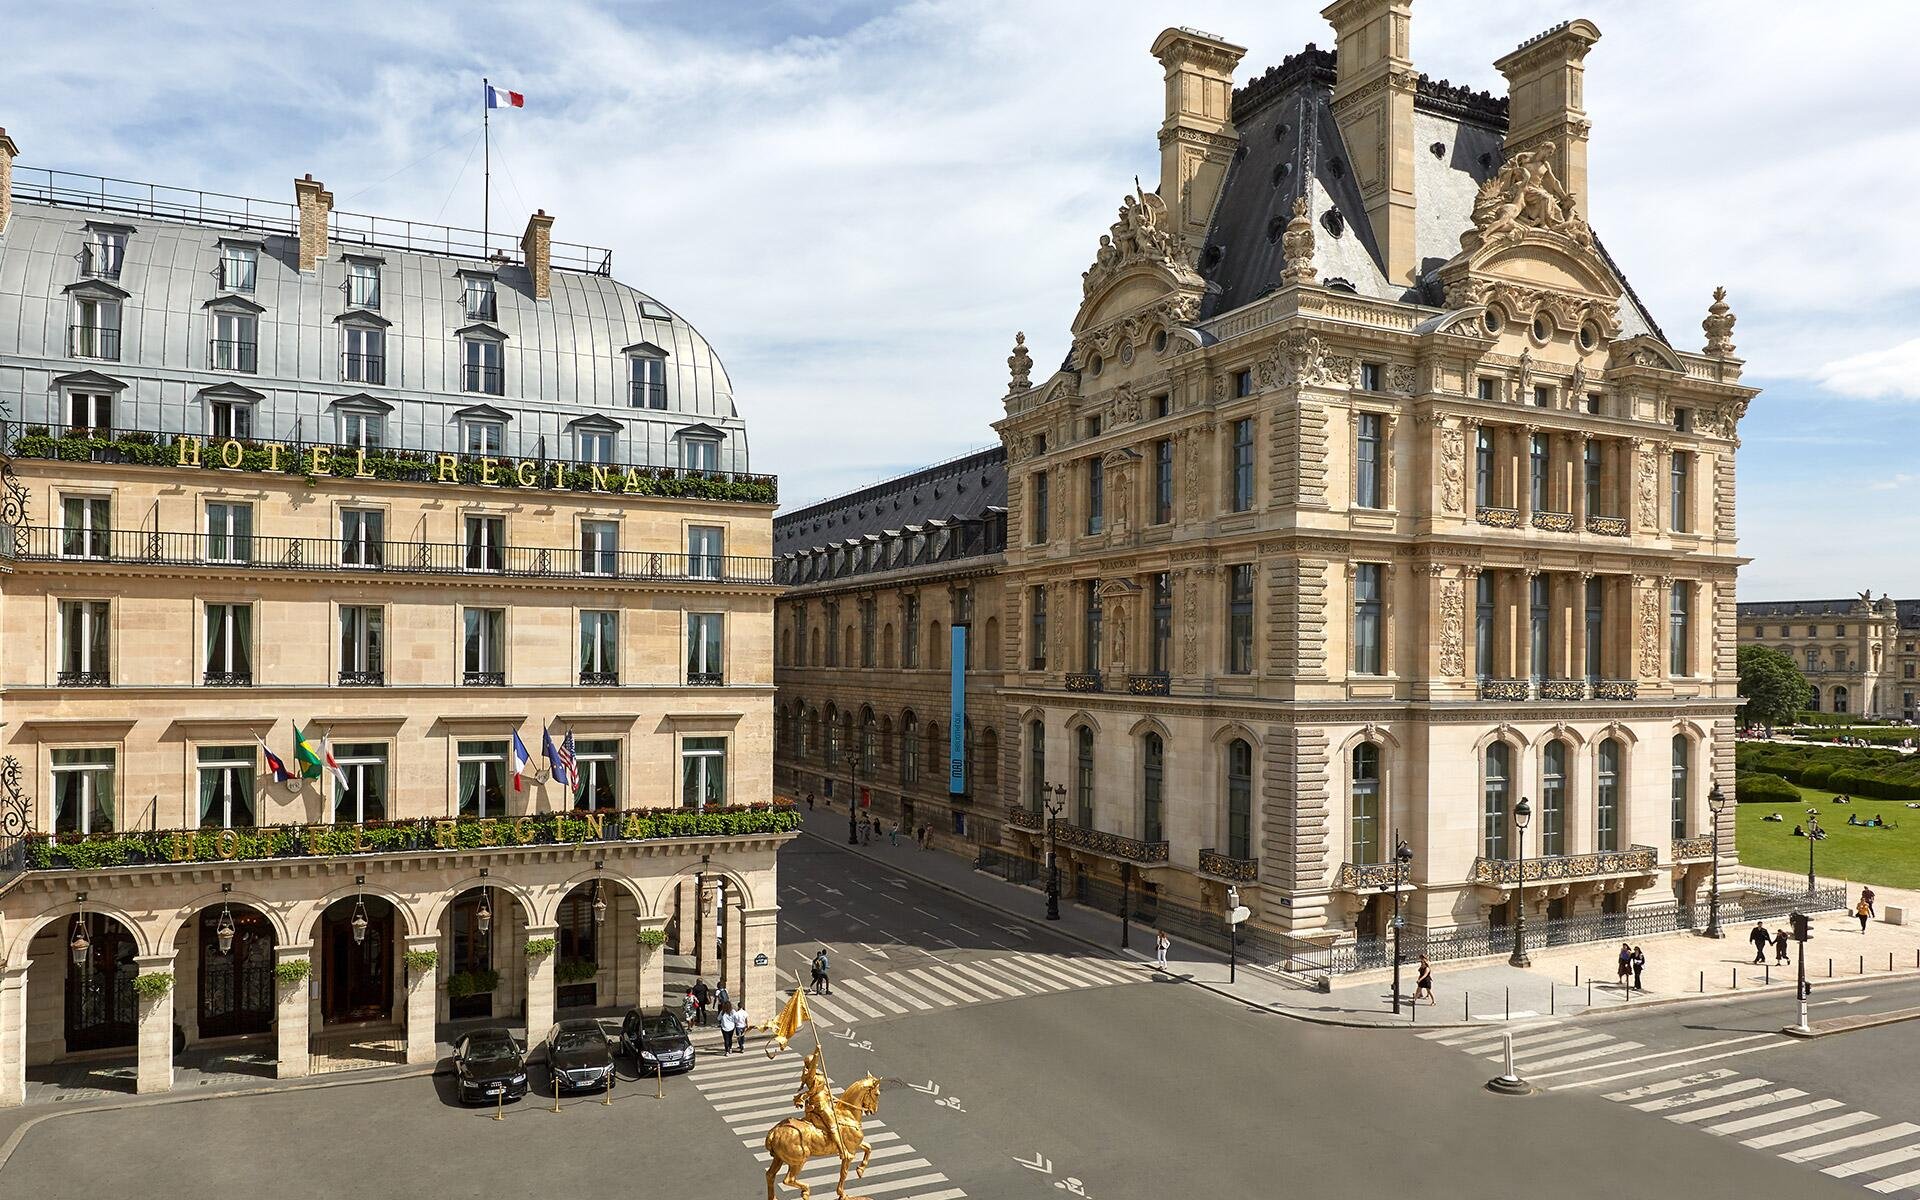 Hôtel Regina Louvre | Hôtel historique Paris